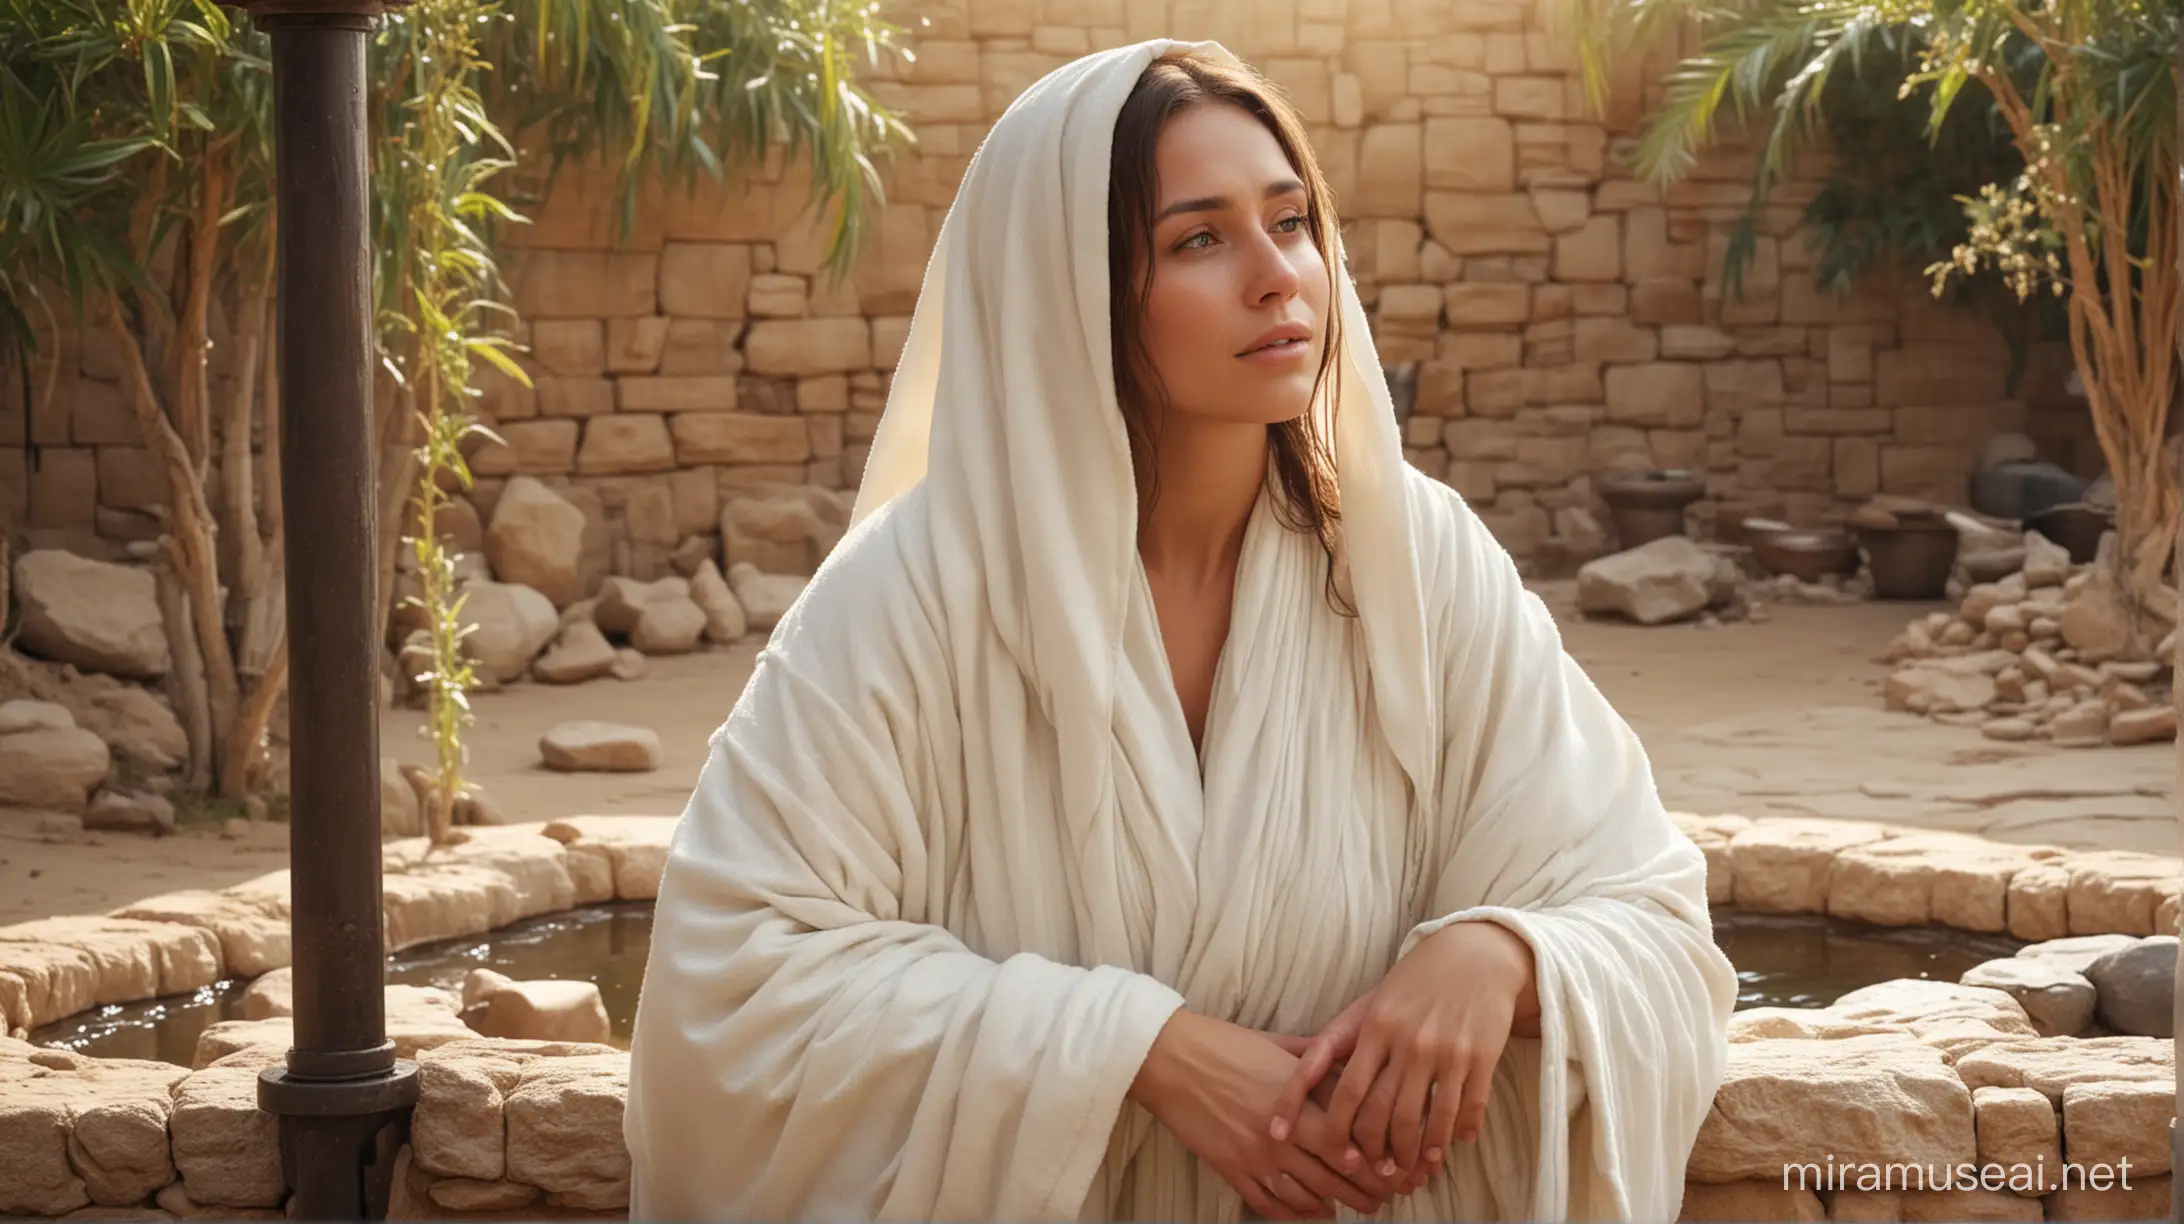 Biblical Scene Samaritan Woman at the Well with Shy Astonishment